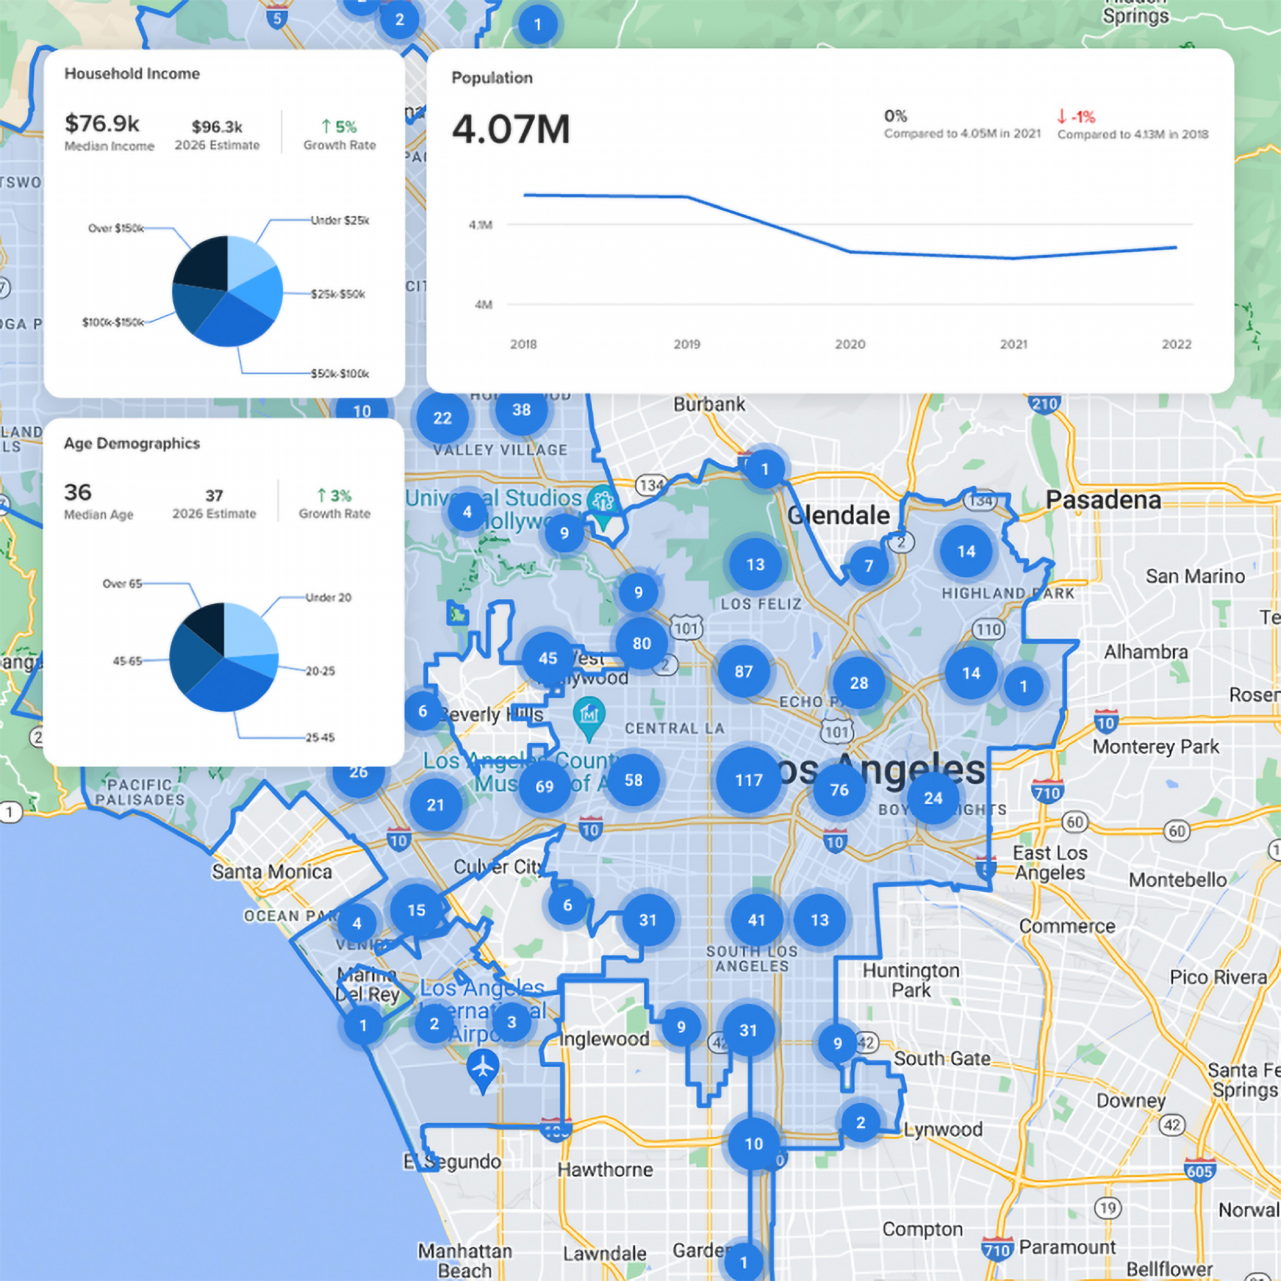 تطبيق عقارات تابع لشركة Crexi يعرض بيانات ديموغرافية فوق خريطة للوس أنجلوس تتضمن أرقامًا داخل دوائر زرقاء